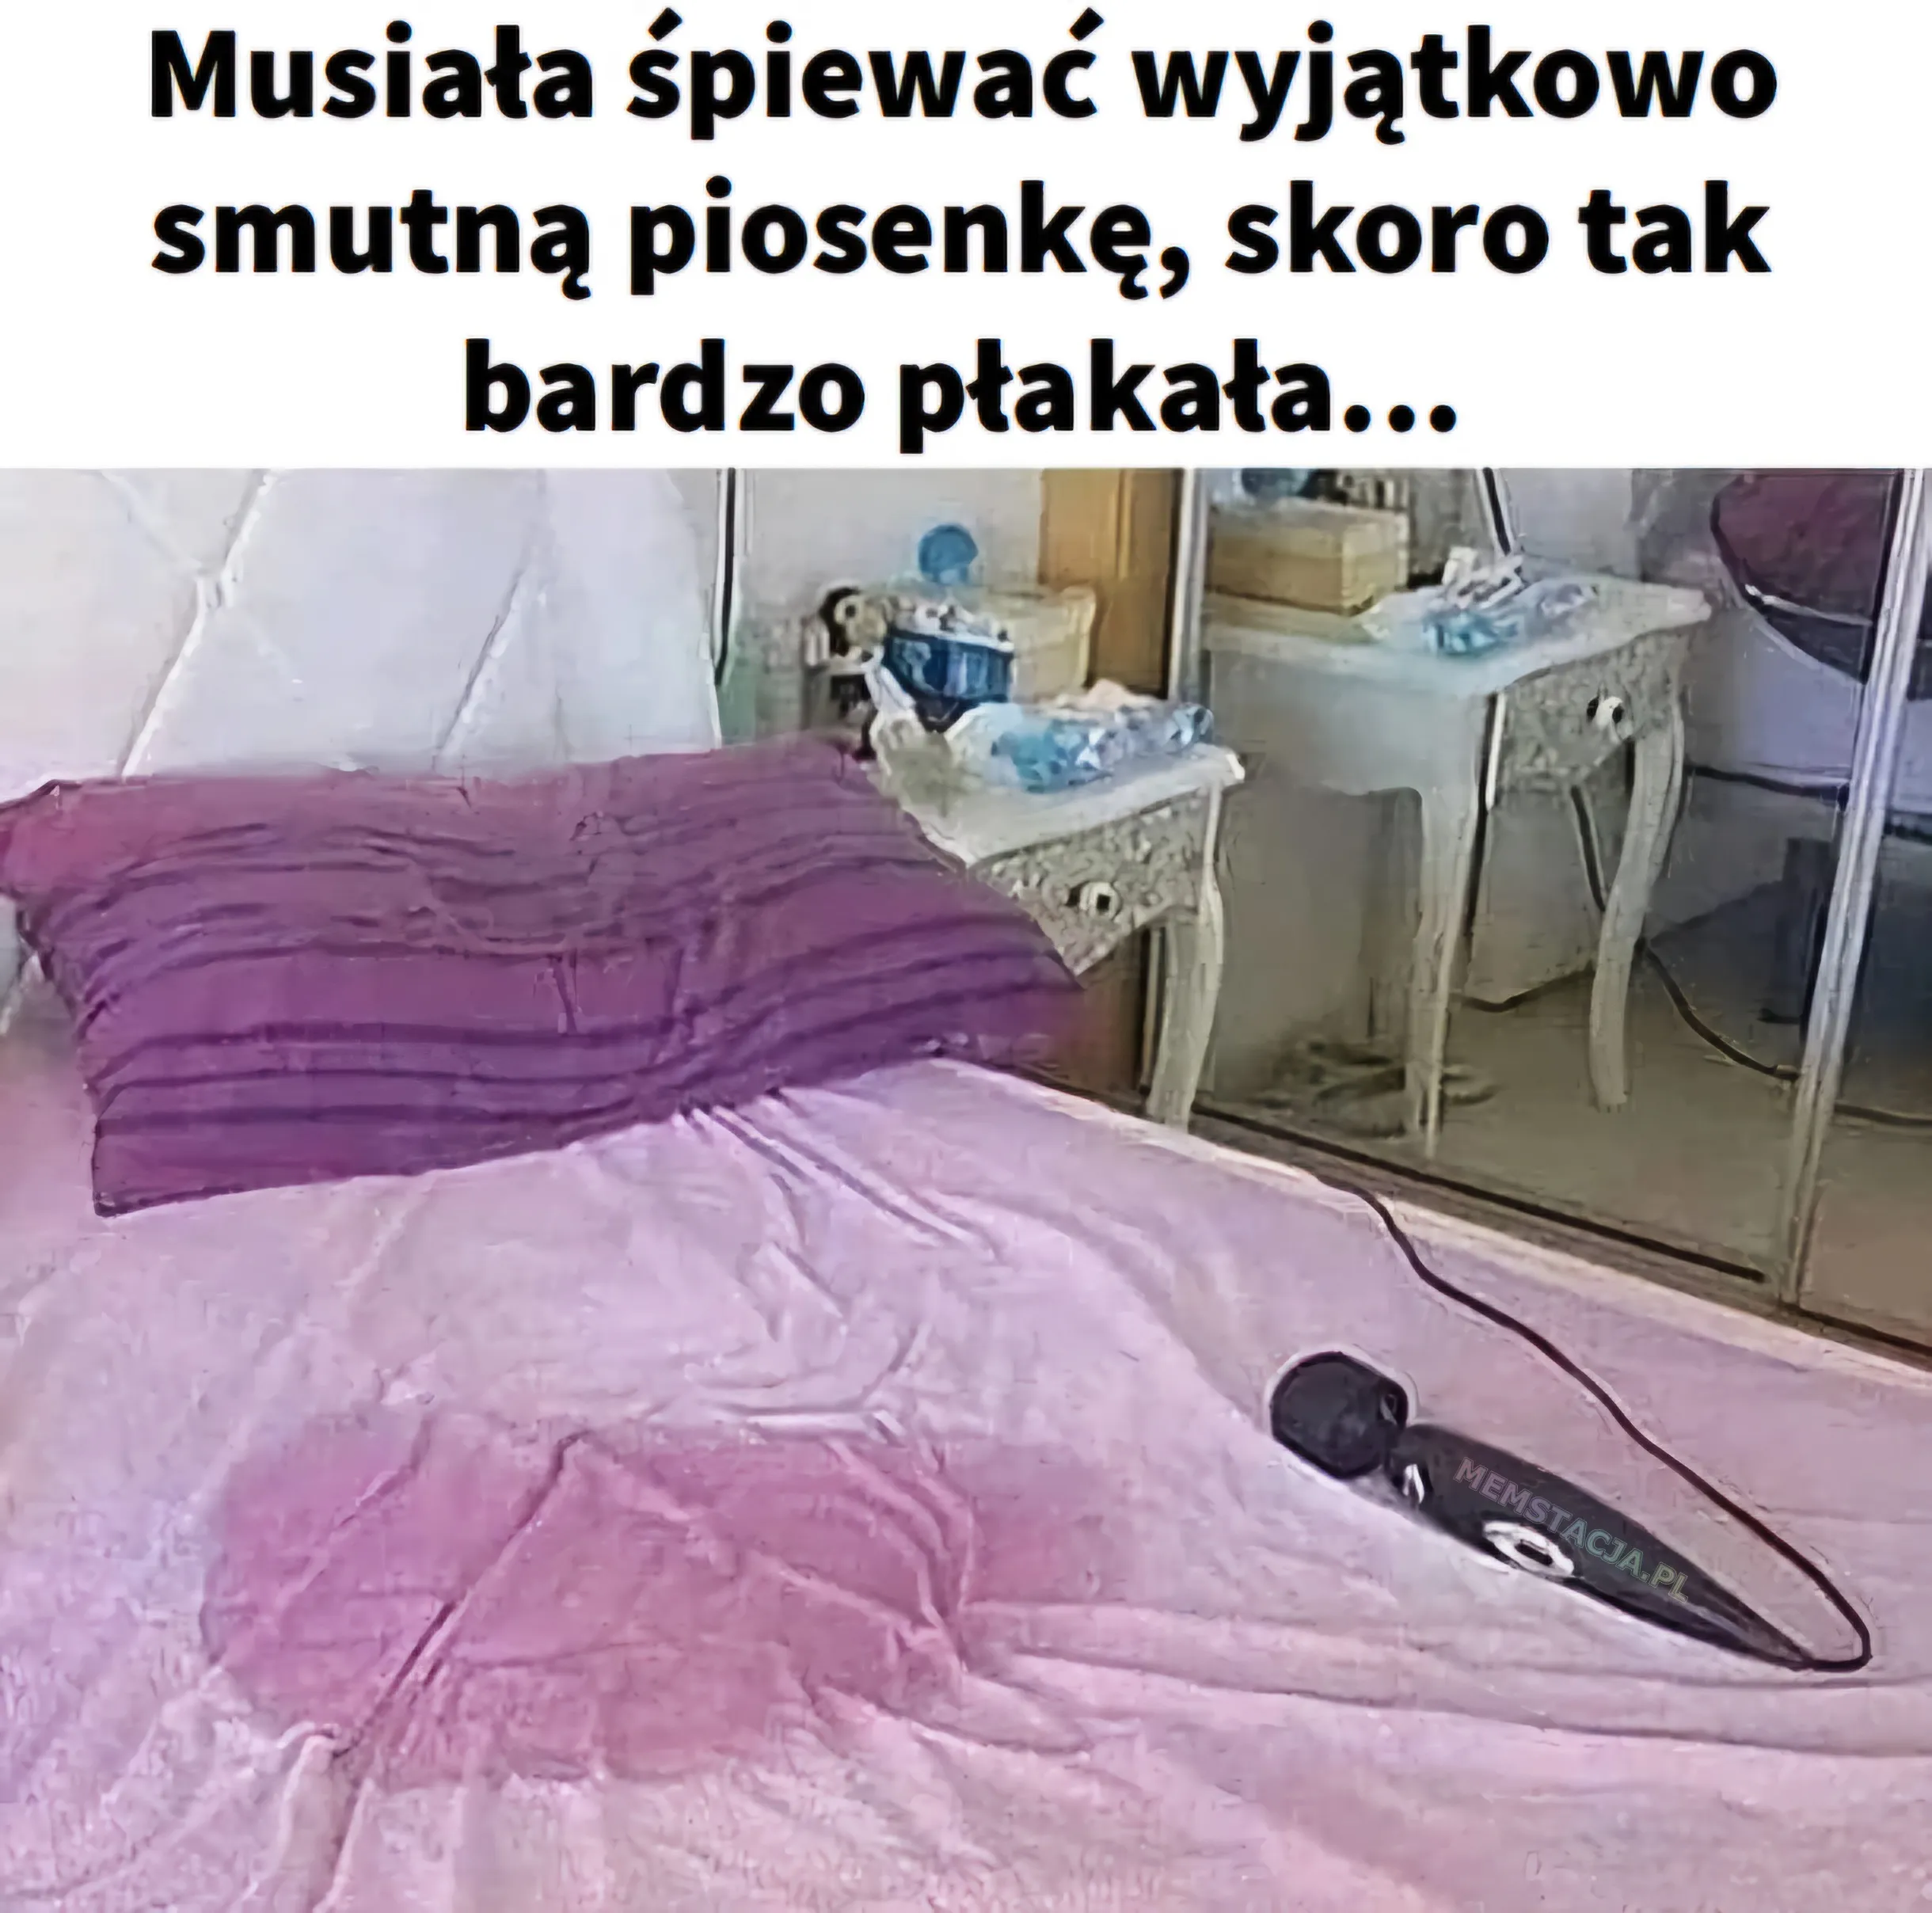 Musiała śpiewać wyjątkowo smutną piosenkę, skoro tak bardzo płakała...: Zdjęcie łóżka z mokrą pościelą i przedmiotem przypominającym mikrofon